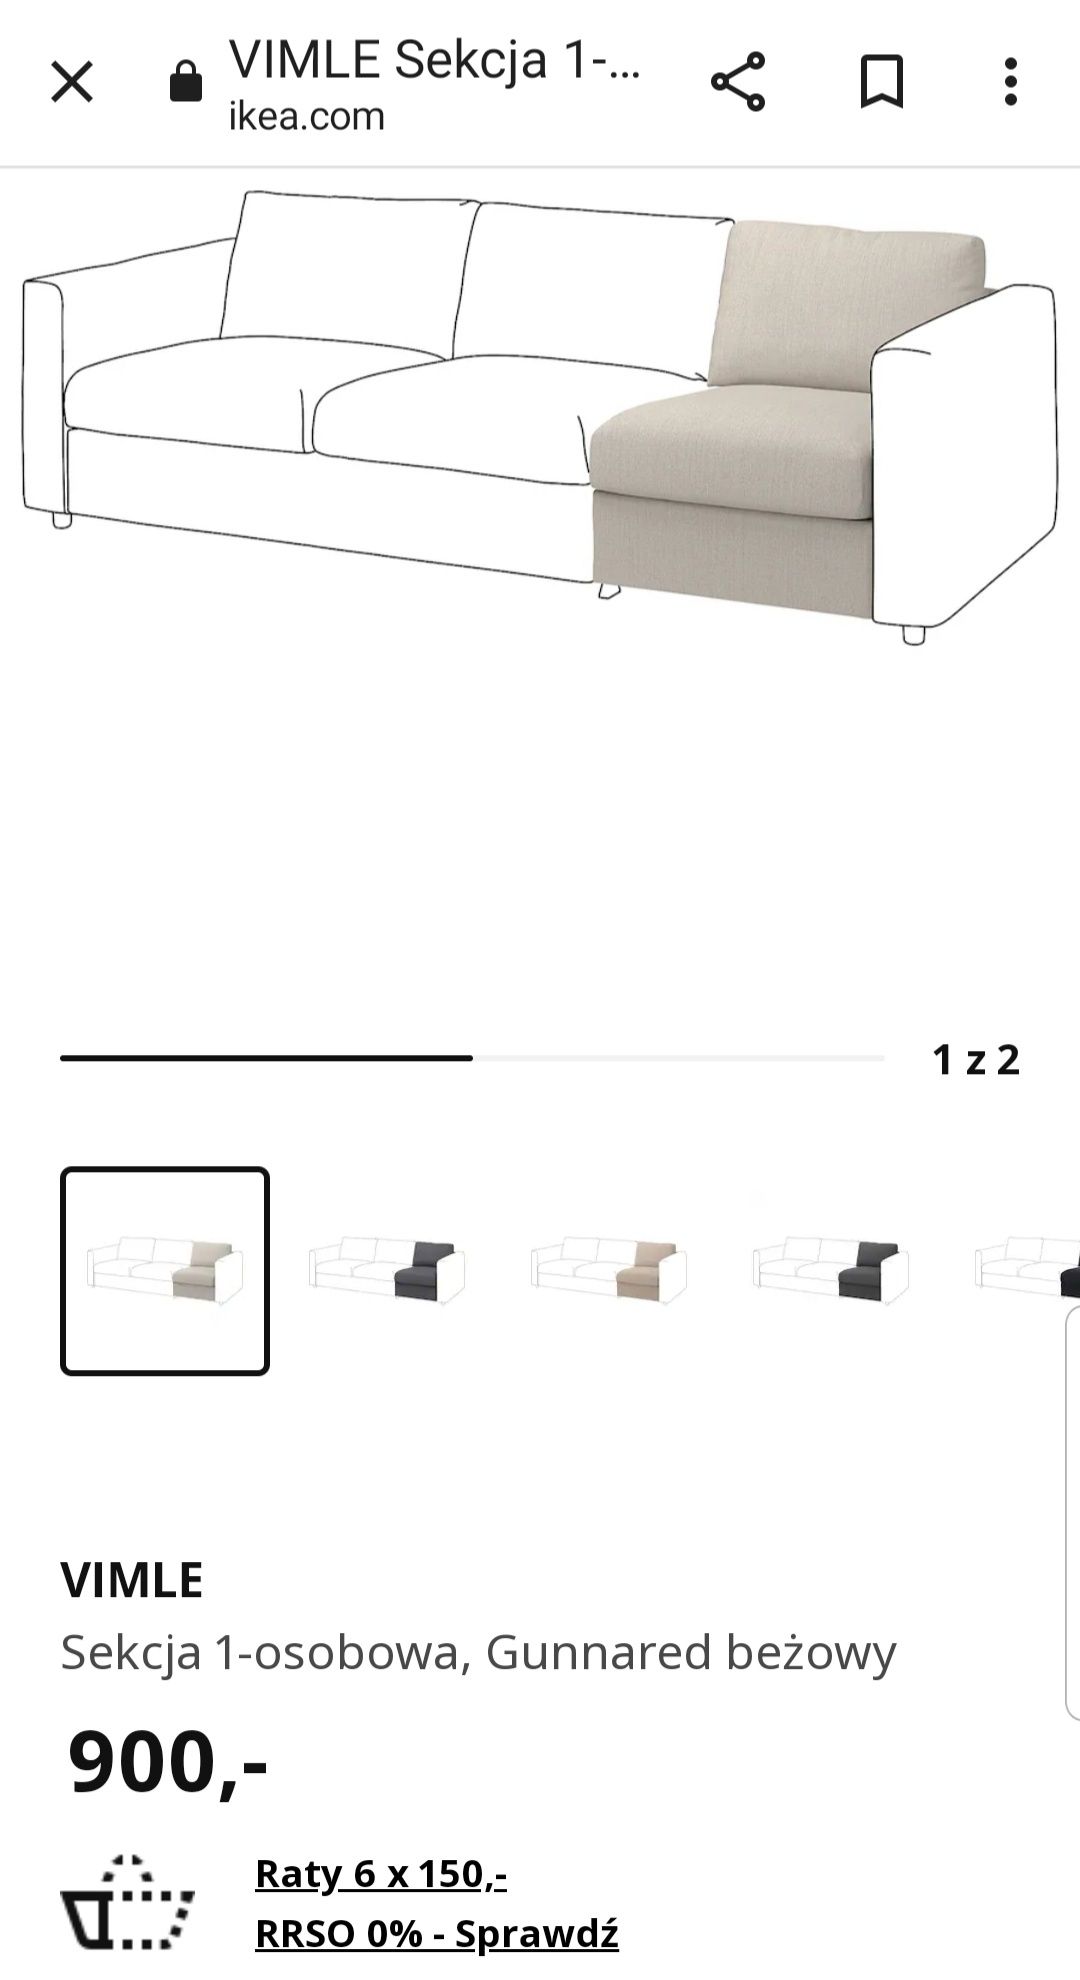 Ikea Vimle sekcja fotel